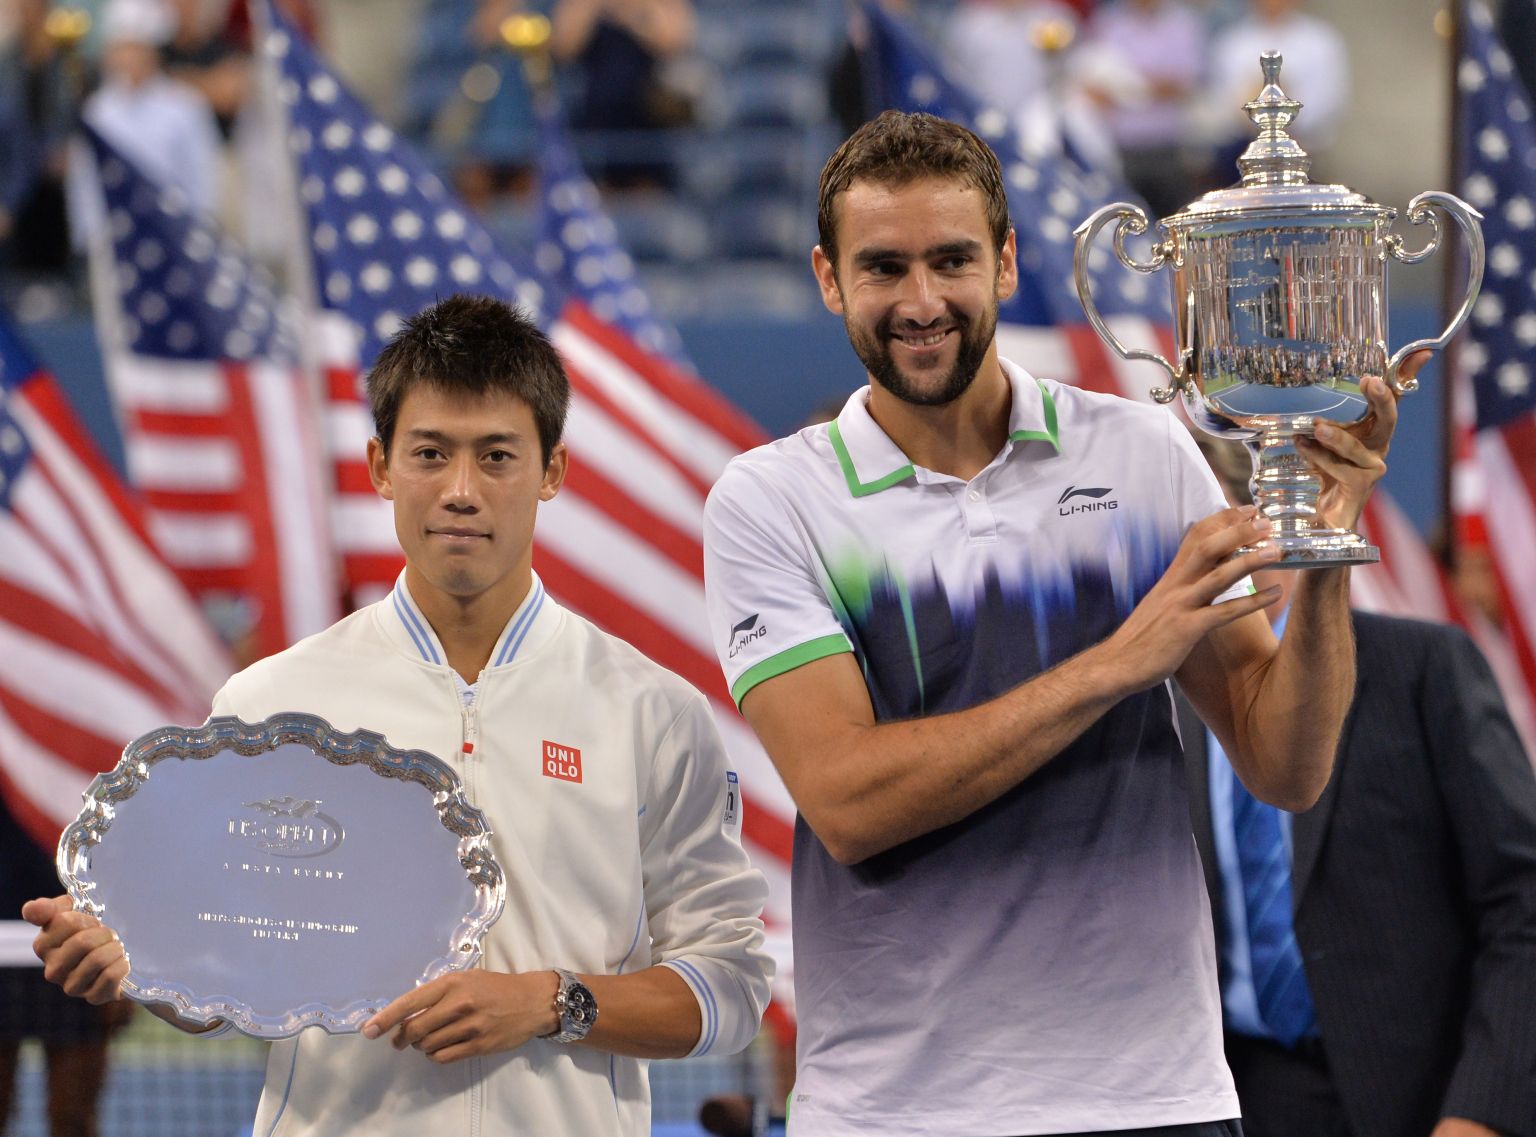 Bis heute der größte Erfolg von beiden. Das US Open-Finale von 2014, in dem sich der Kroate zum Grand Slam-Champion machte.